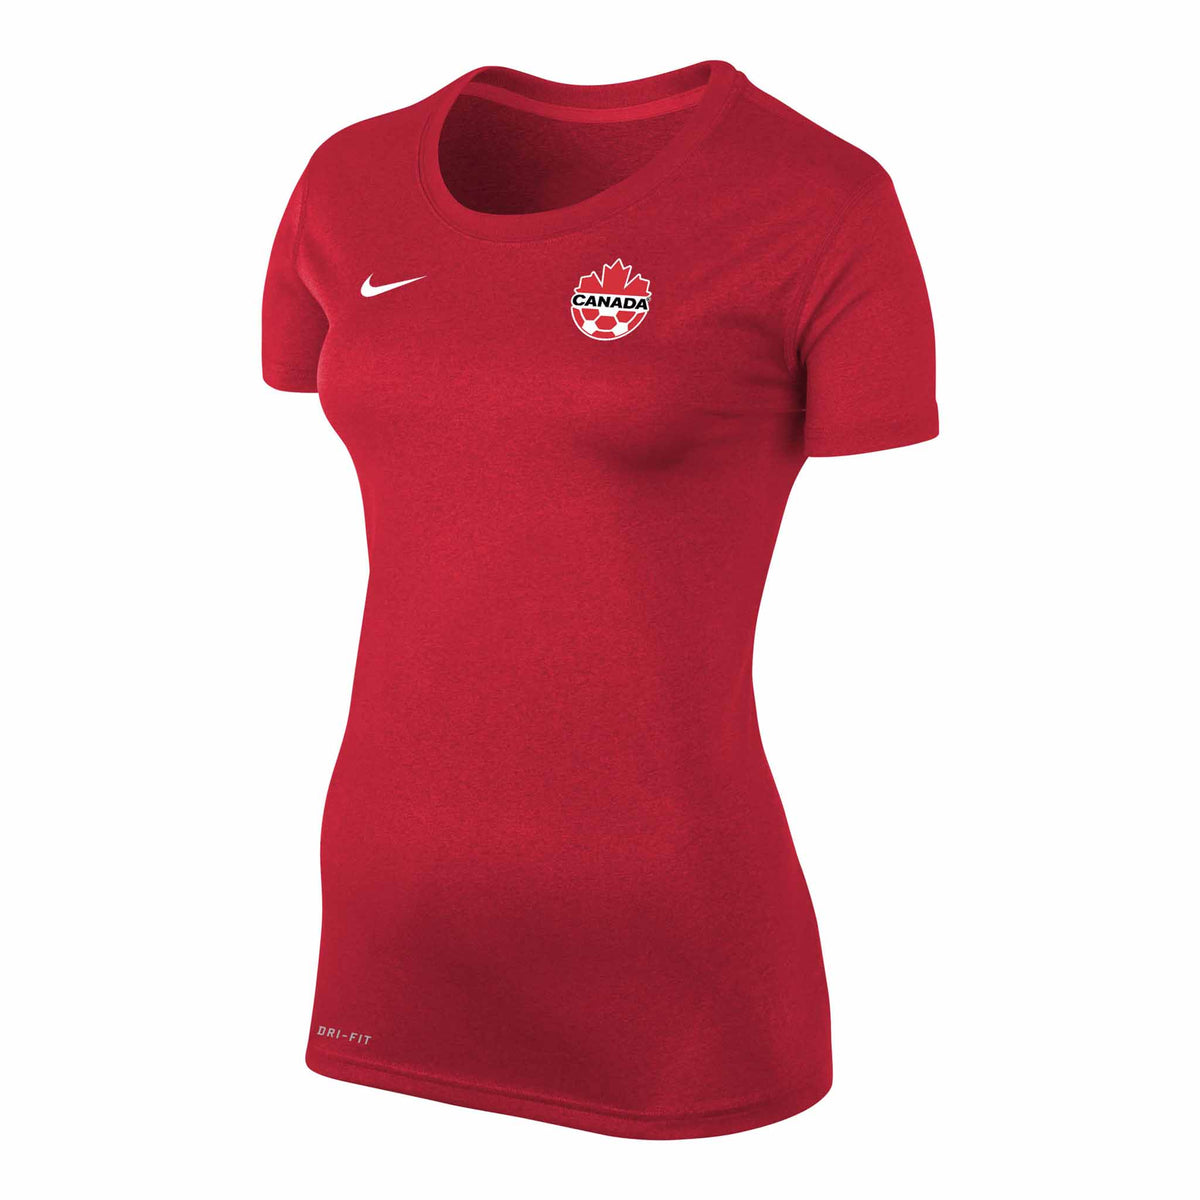 Nike Canada Soccer Kadeisha Buchanan Legend SS t-shirt de soccer femme